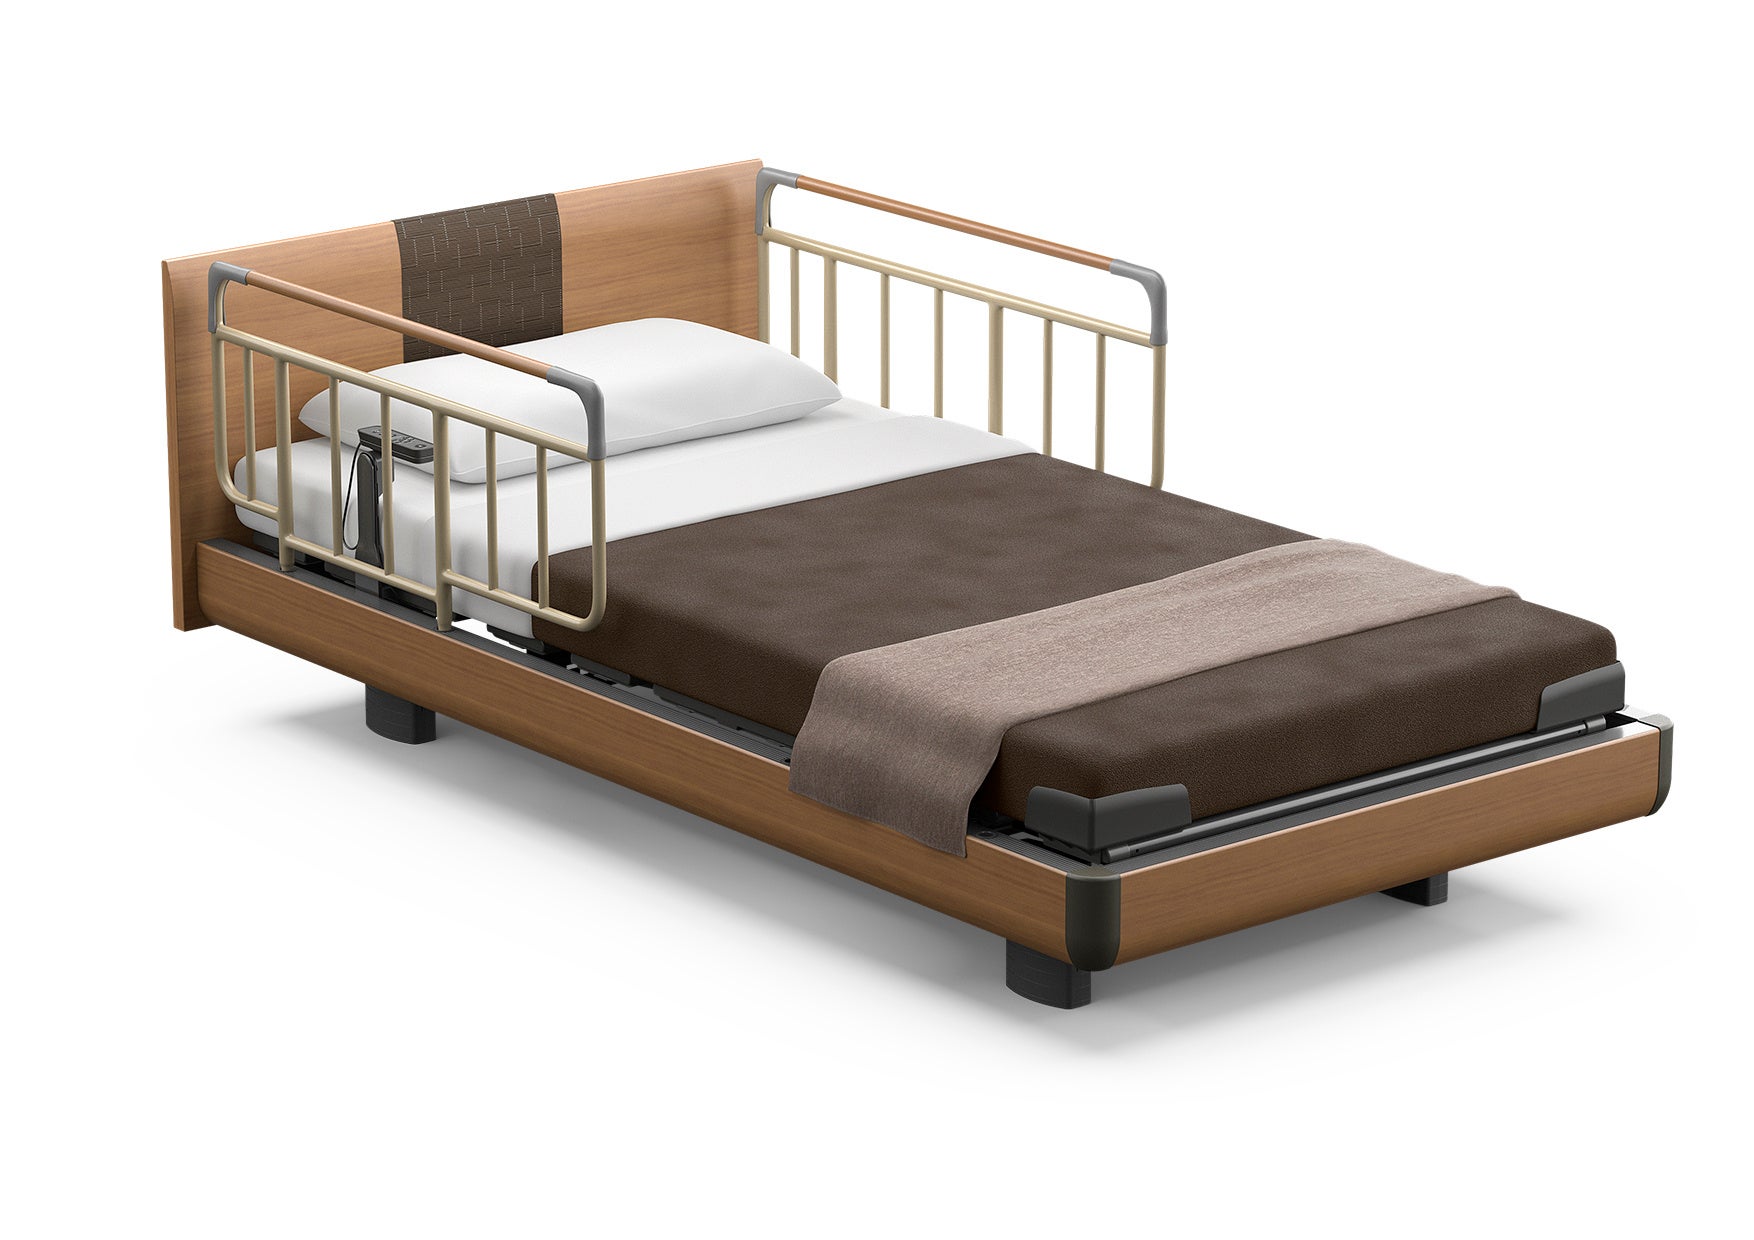 一般家庭向け電動ベッド「INTIME1000シリーズ」フルモデルチェンジのサブ画像6_ベッド柵を取り付けたイメージ。